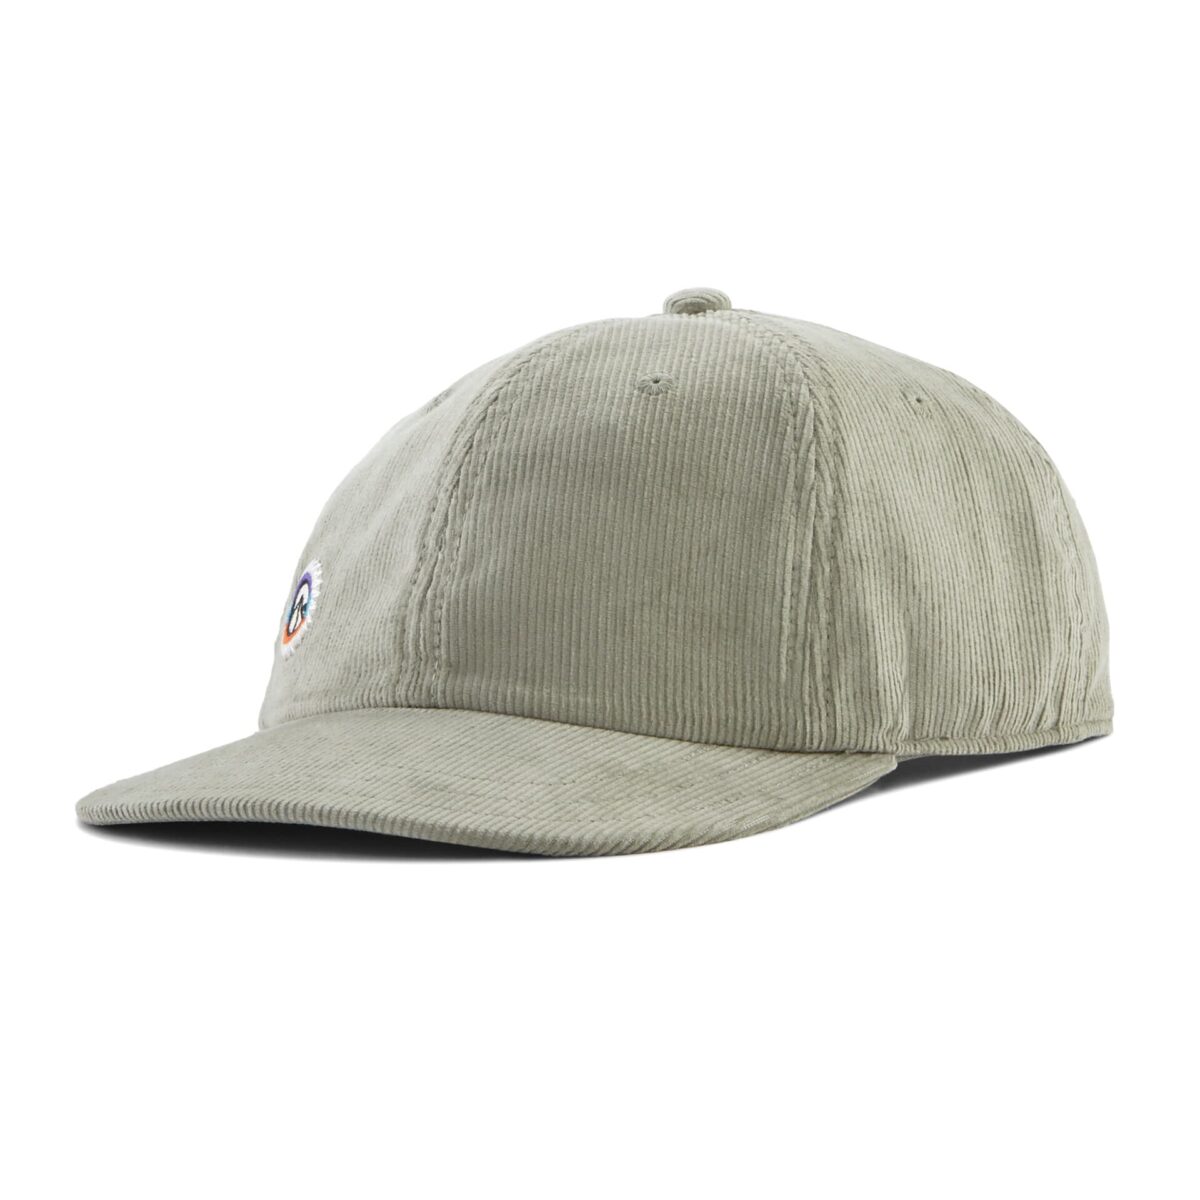 PATAGONIA CORDUROY CAP cappellino unisex